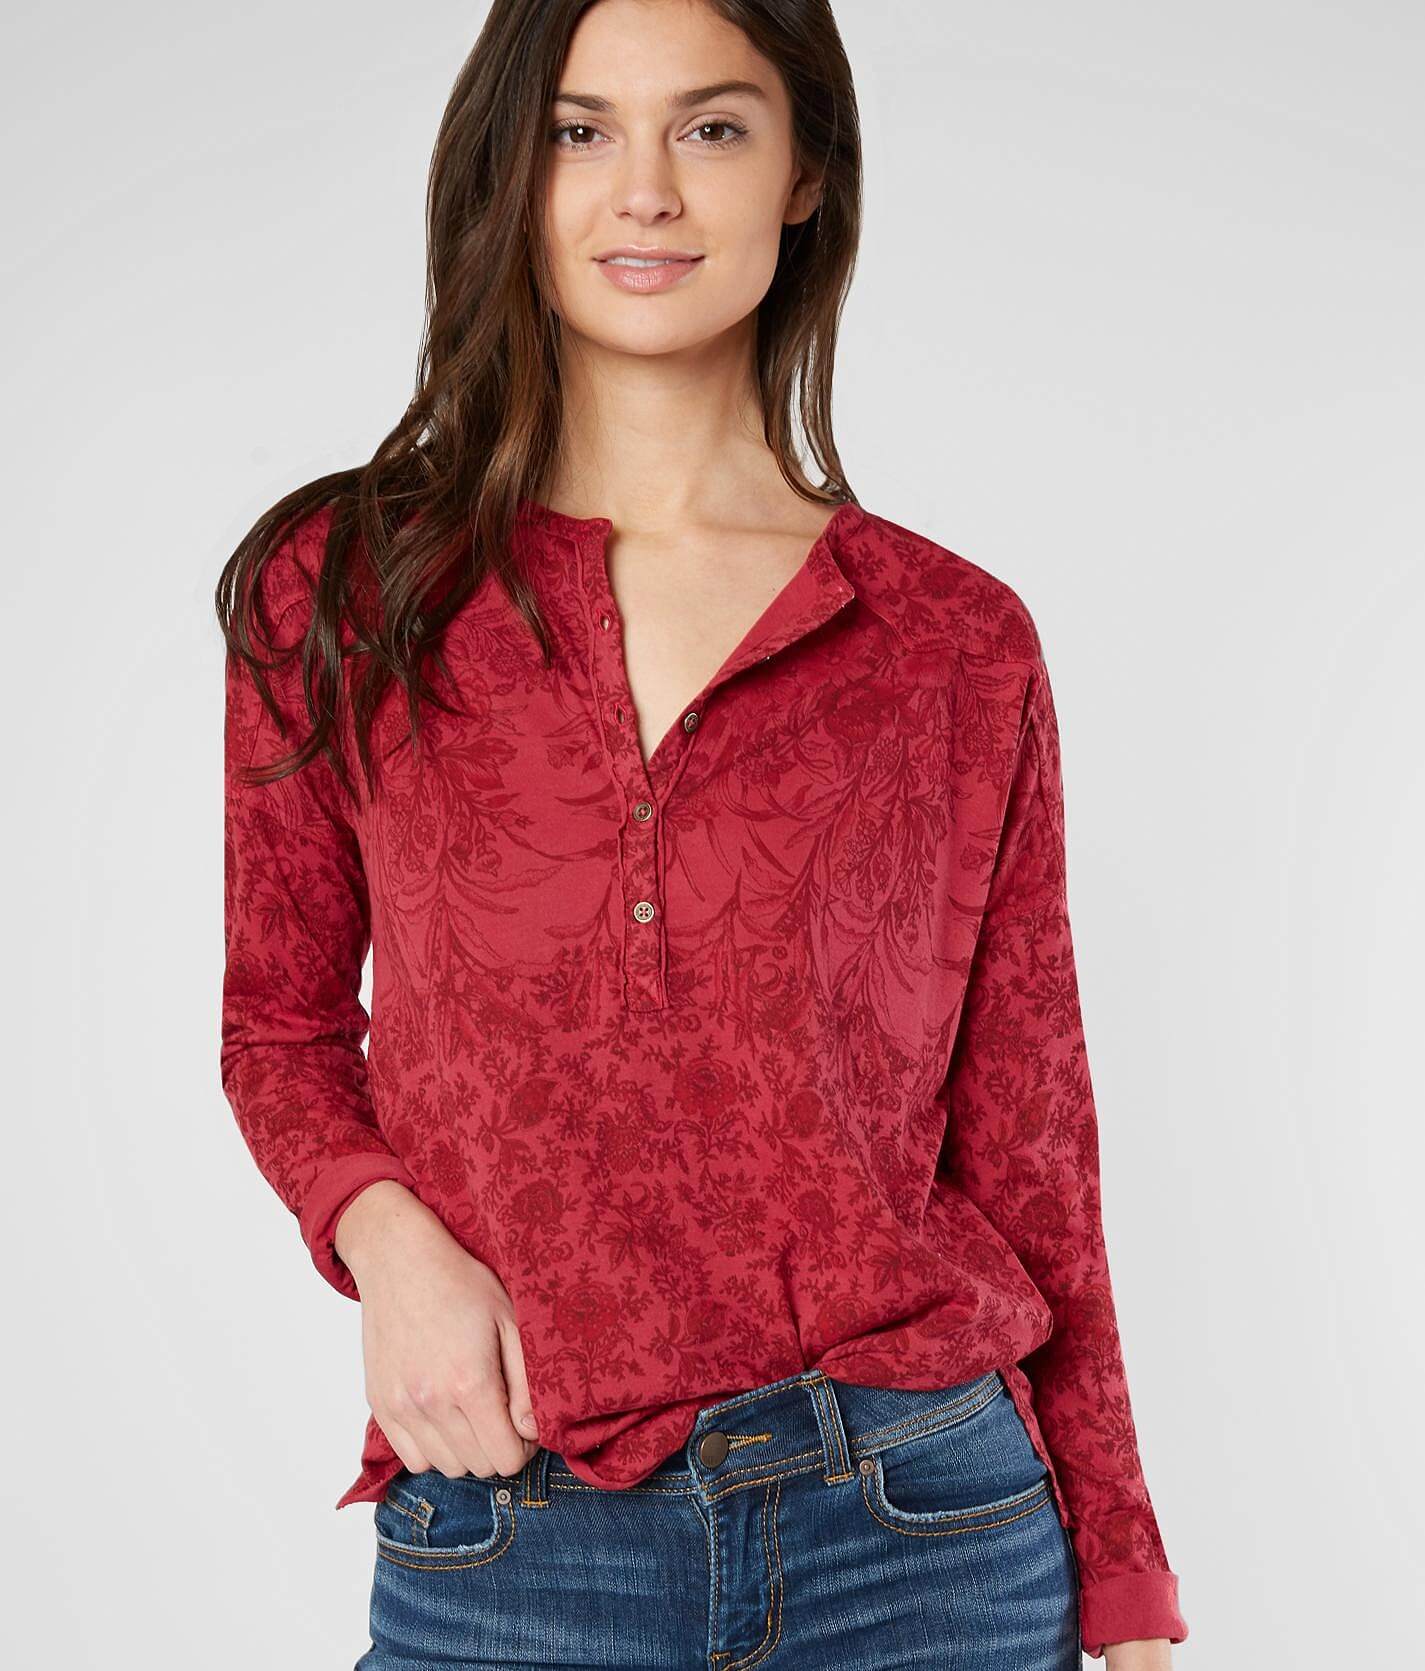 red henley shirt women's